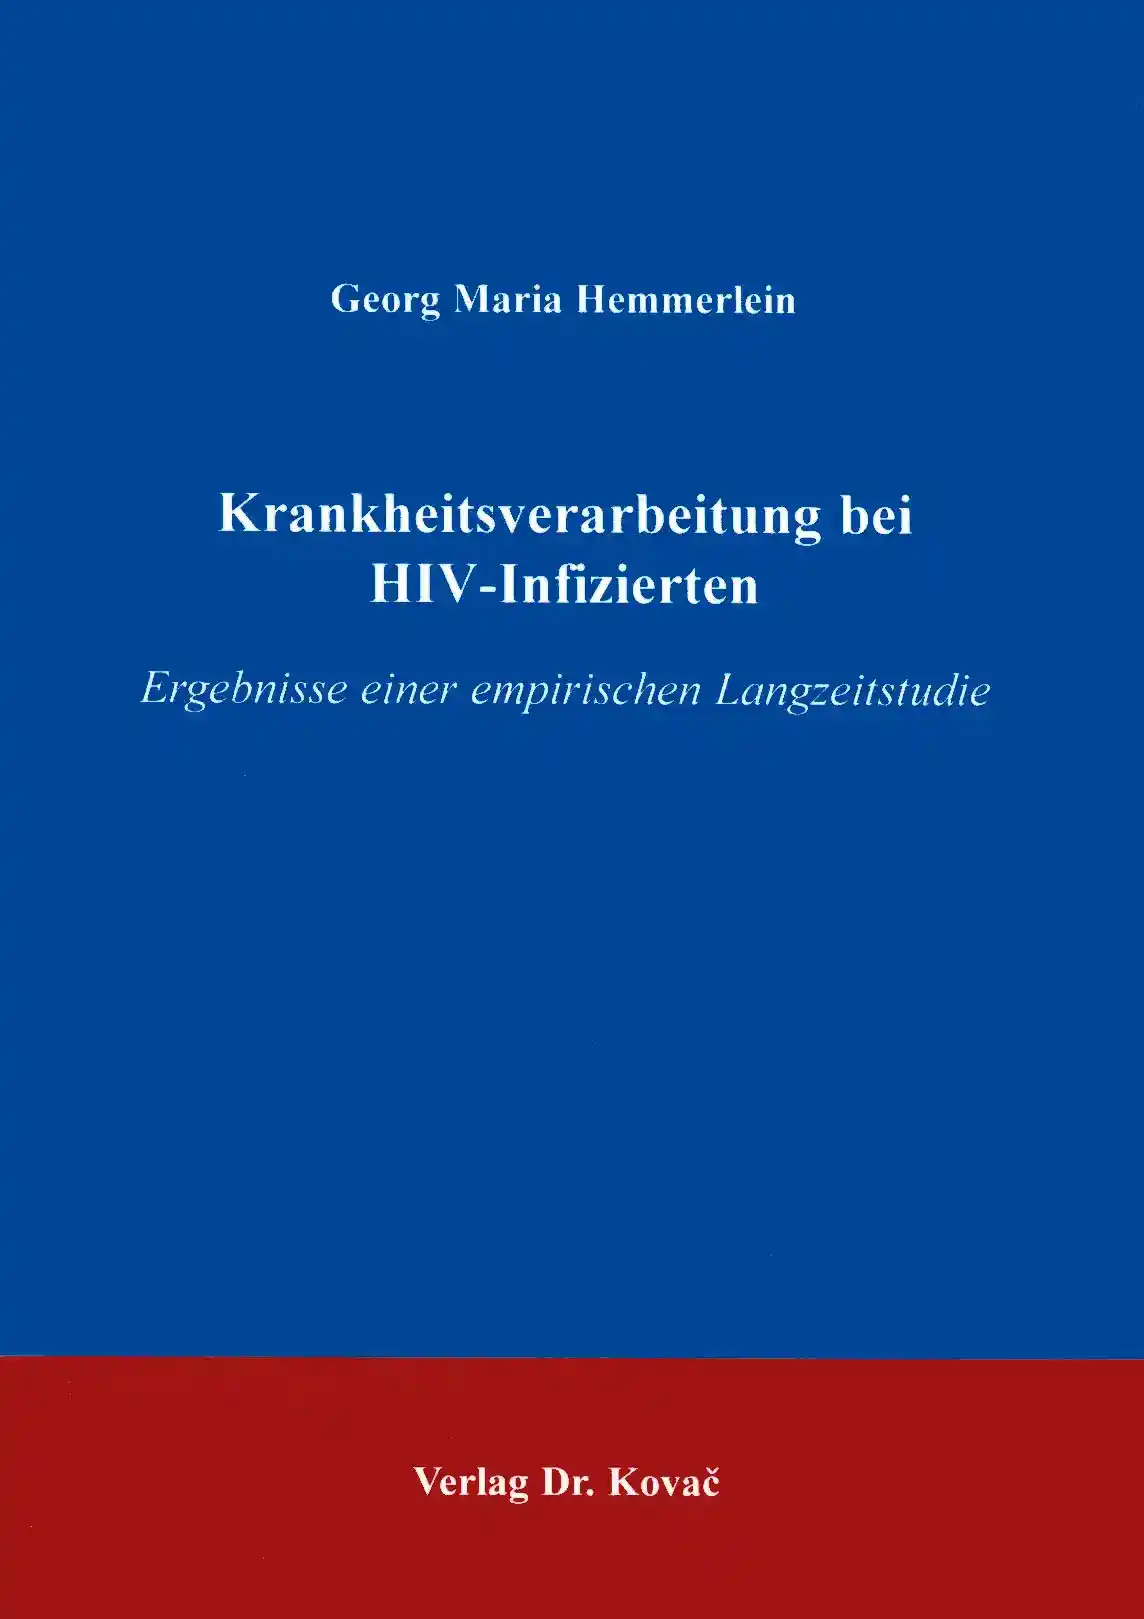 Krankheitsverarbeitung bei HIV-Infizierten (Forschungsarbeit)